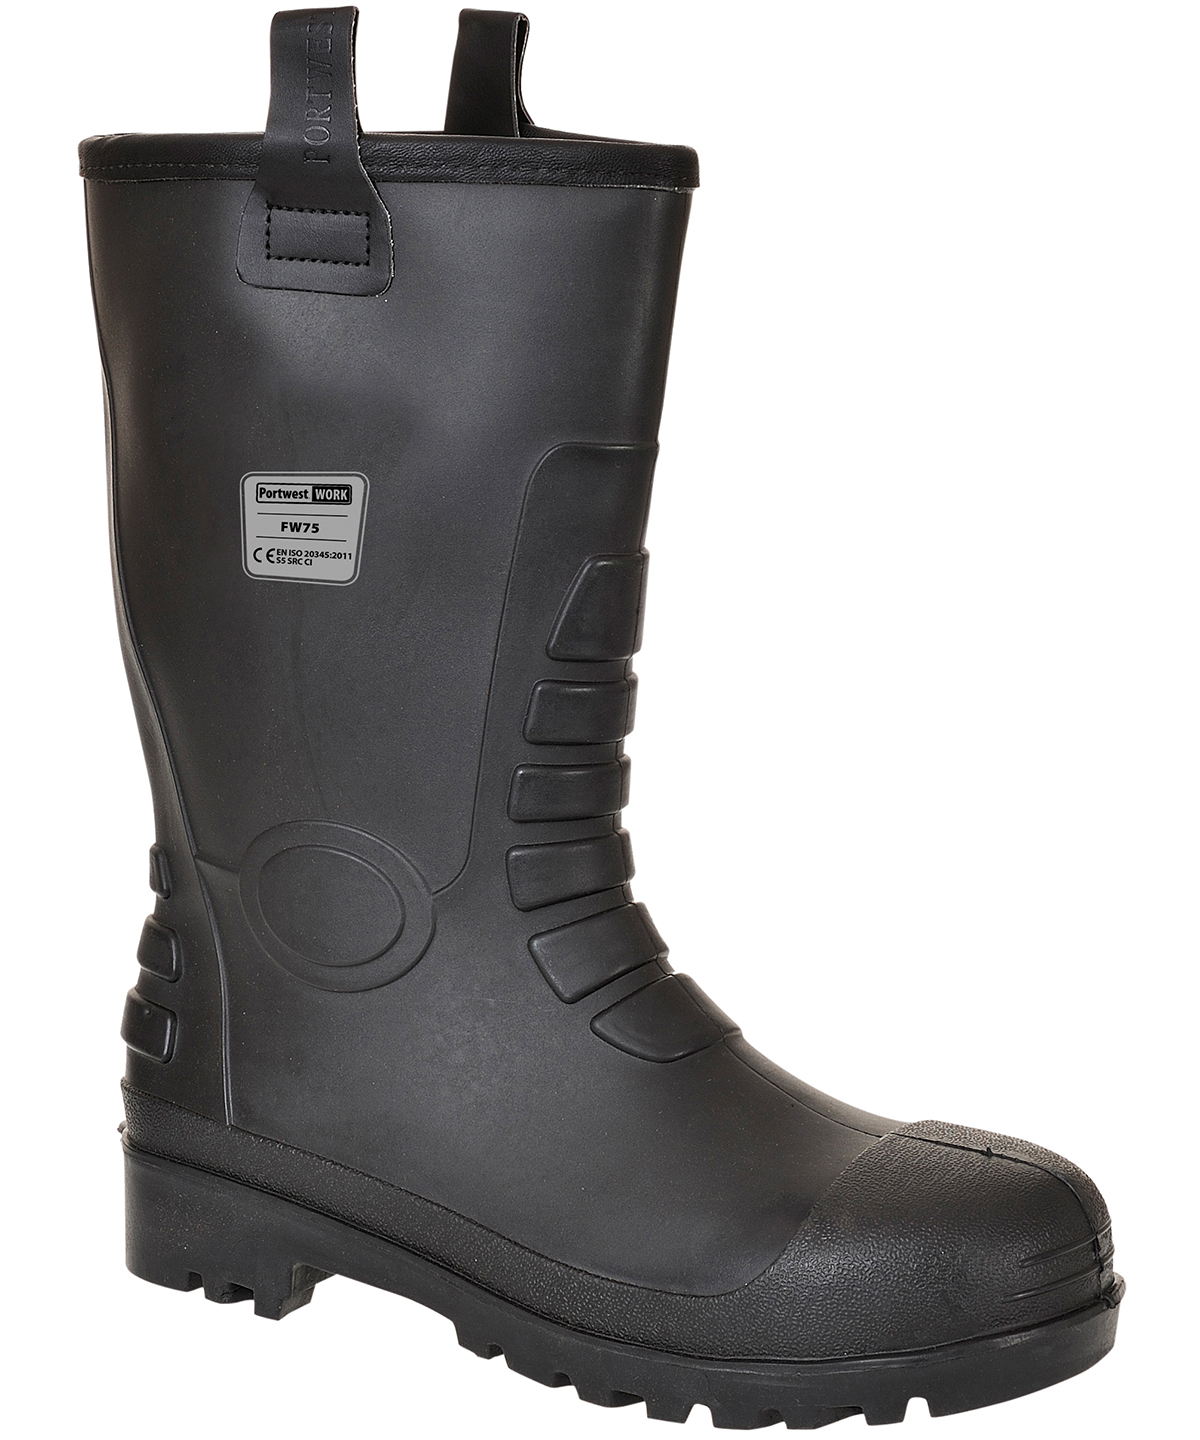 Steelite™ Neptune Rigger Boot S5 Ci (Fw75) Black Size 10